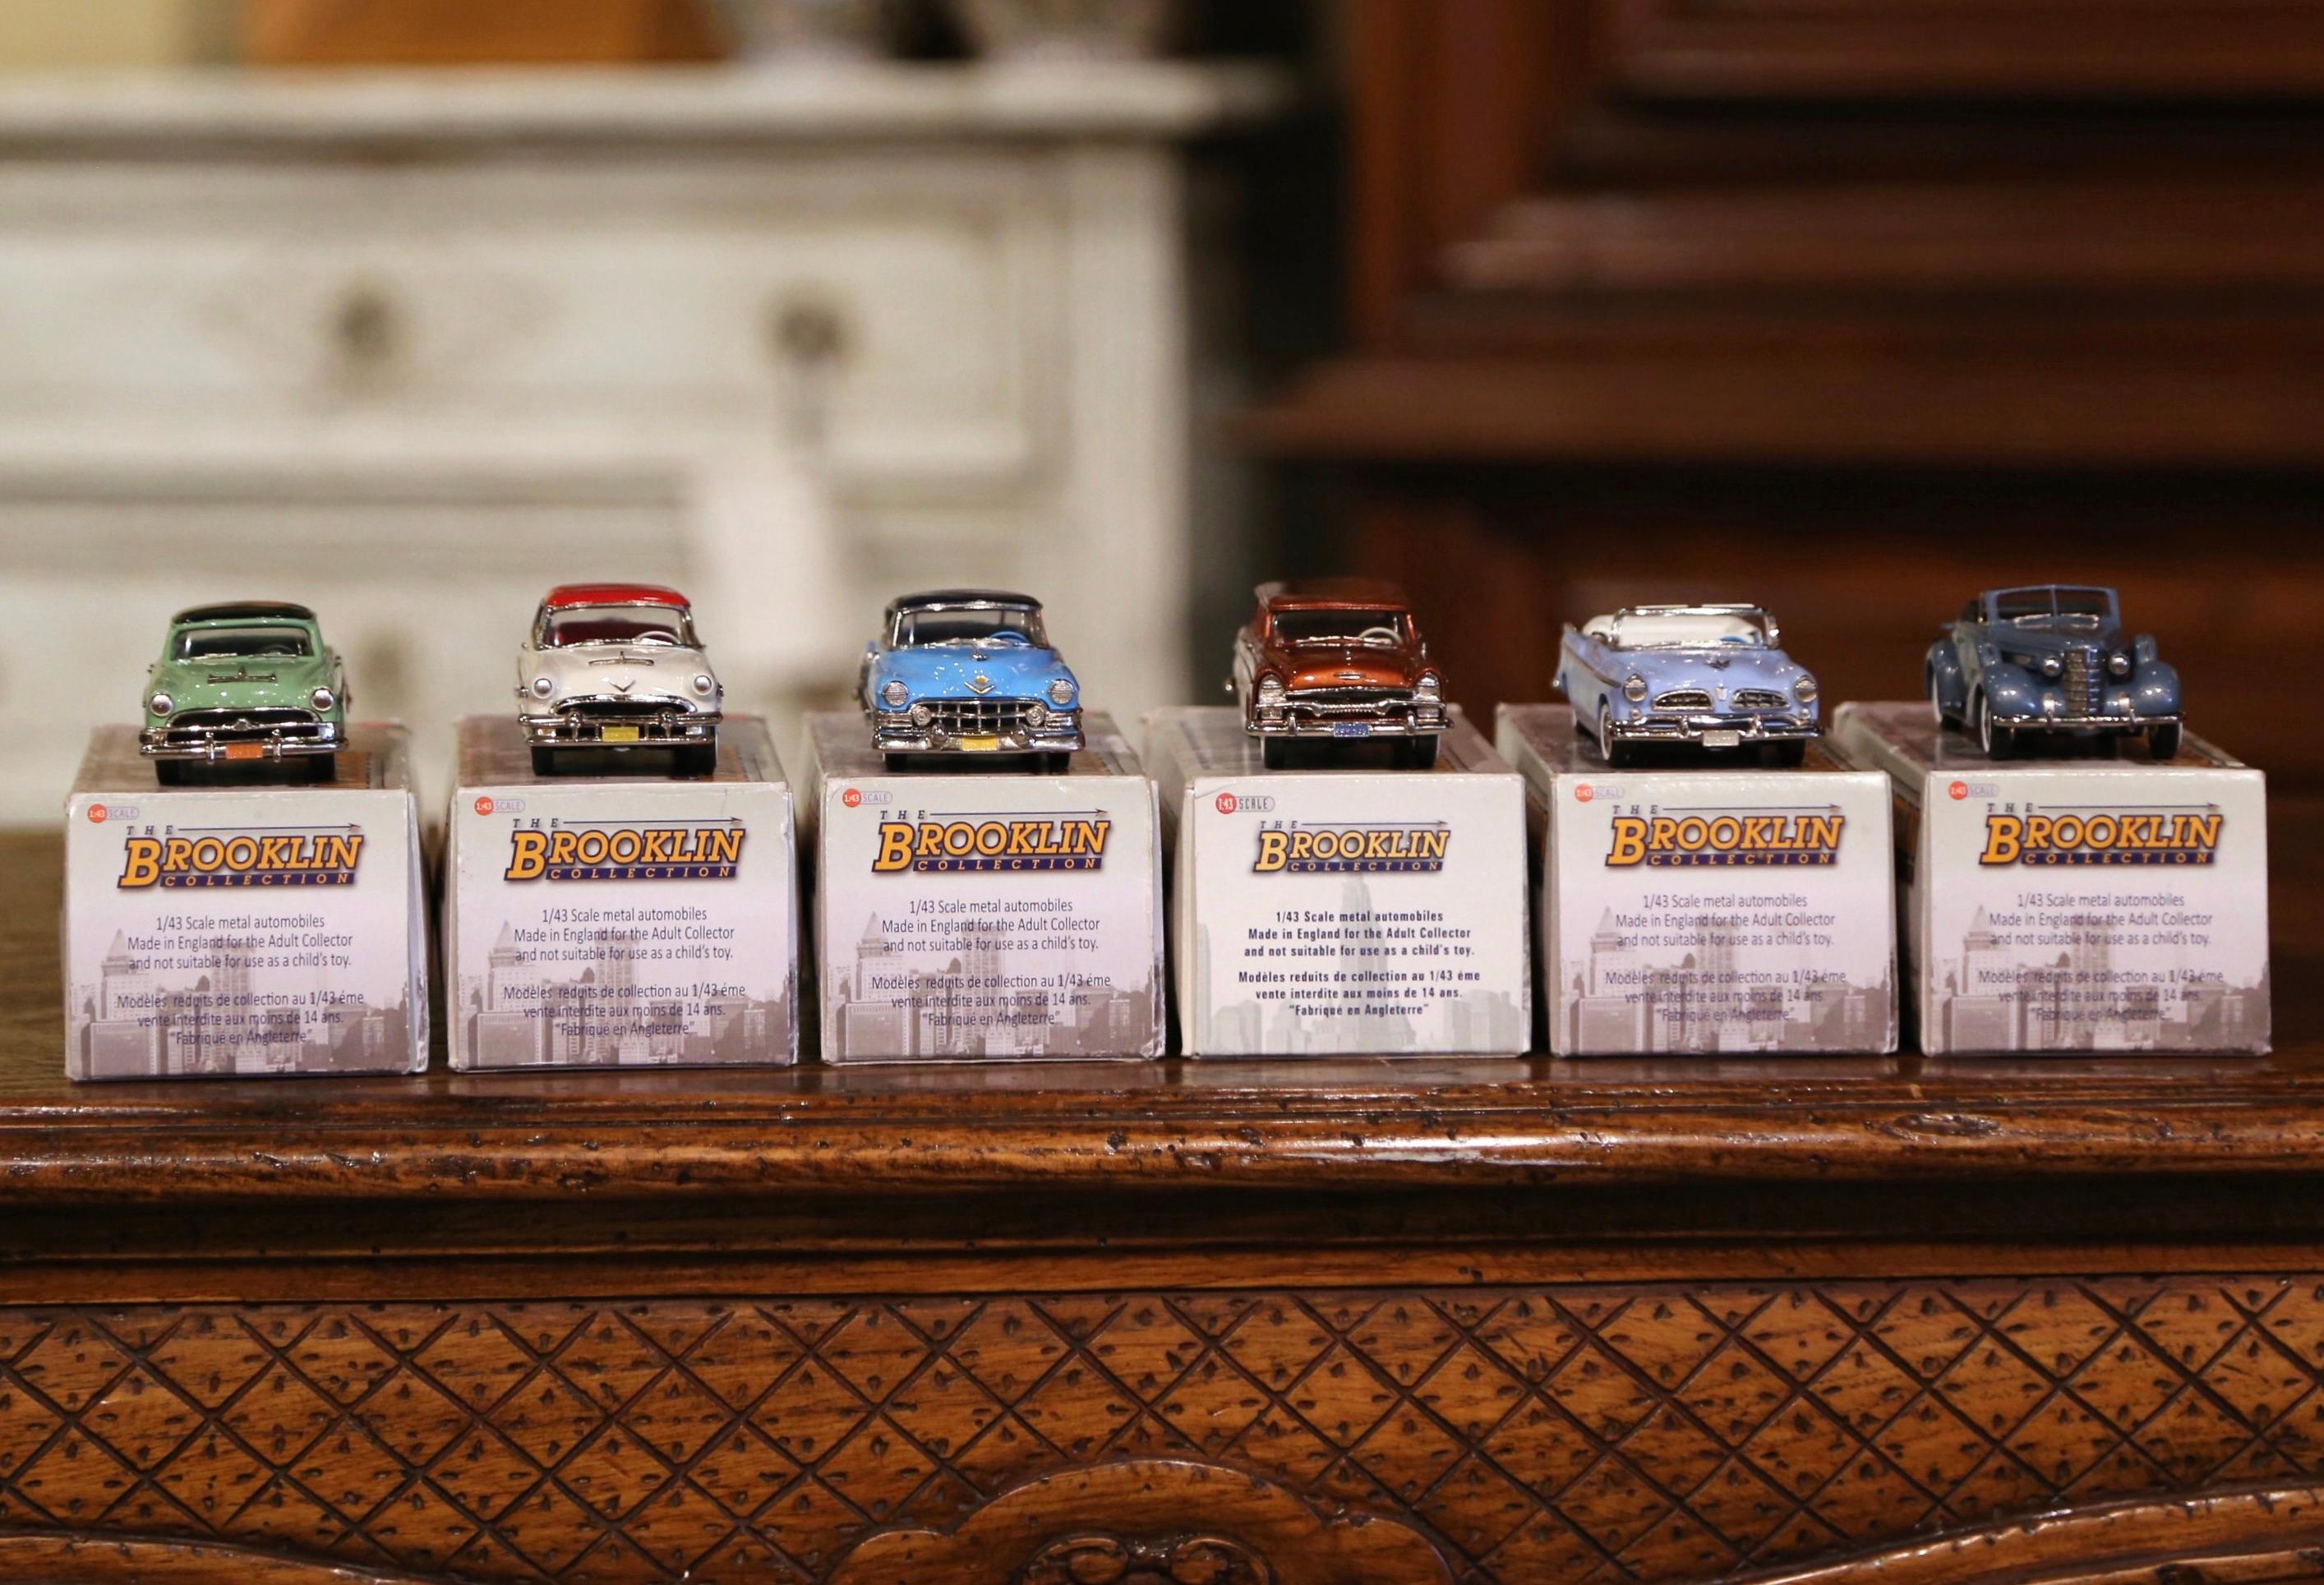 Décorez une étagère avec cette merveilleuse collection de voitures miniatures. Fabriquée en Angleterre vers 2010, la collection comprend une Cadillac série 62 Coupe de Ville de 1952, un Chevrolet 4 portes Station Wagon de 1959, une Lucerne Coupe de